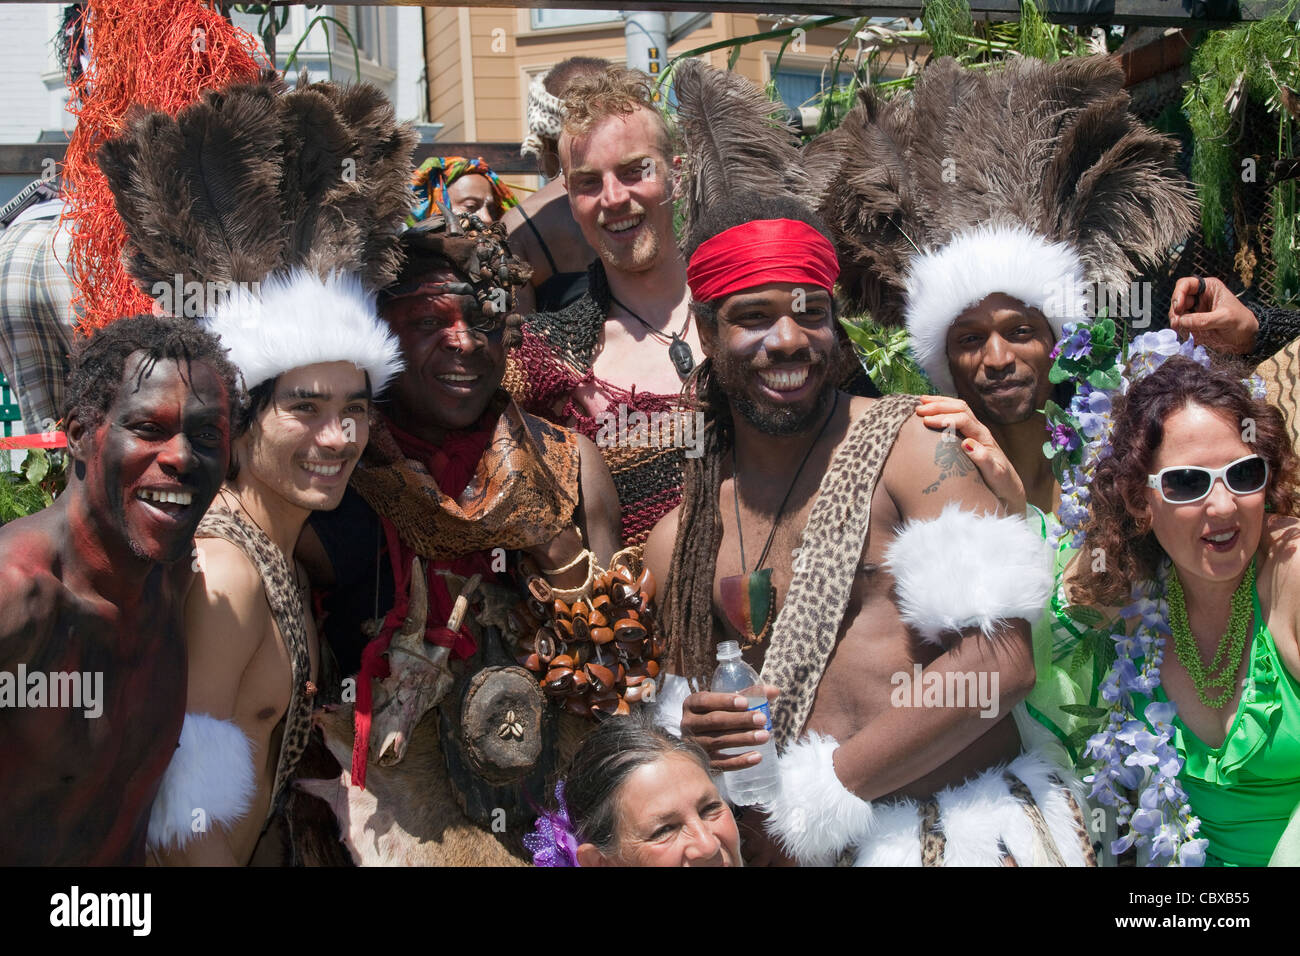 Frauen und Männer in Kostümen, die Teilnahme an jährlichen Carnaval Festival im Mission District in San Francisco, Kalifornien, USA Stockfoto